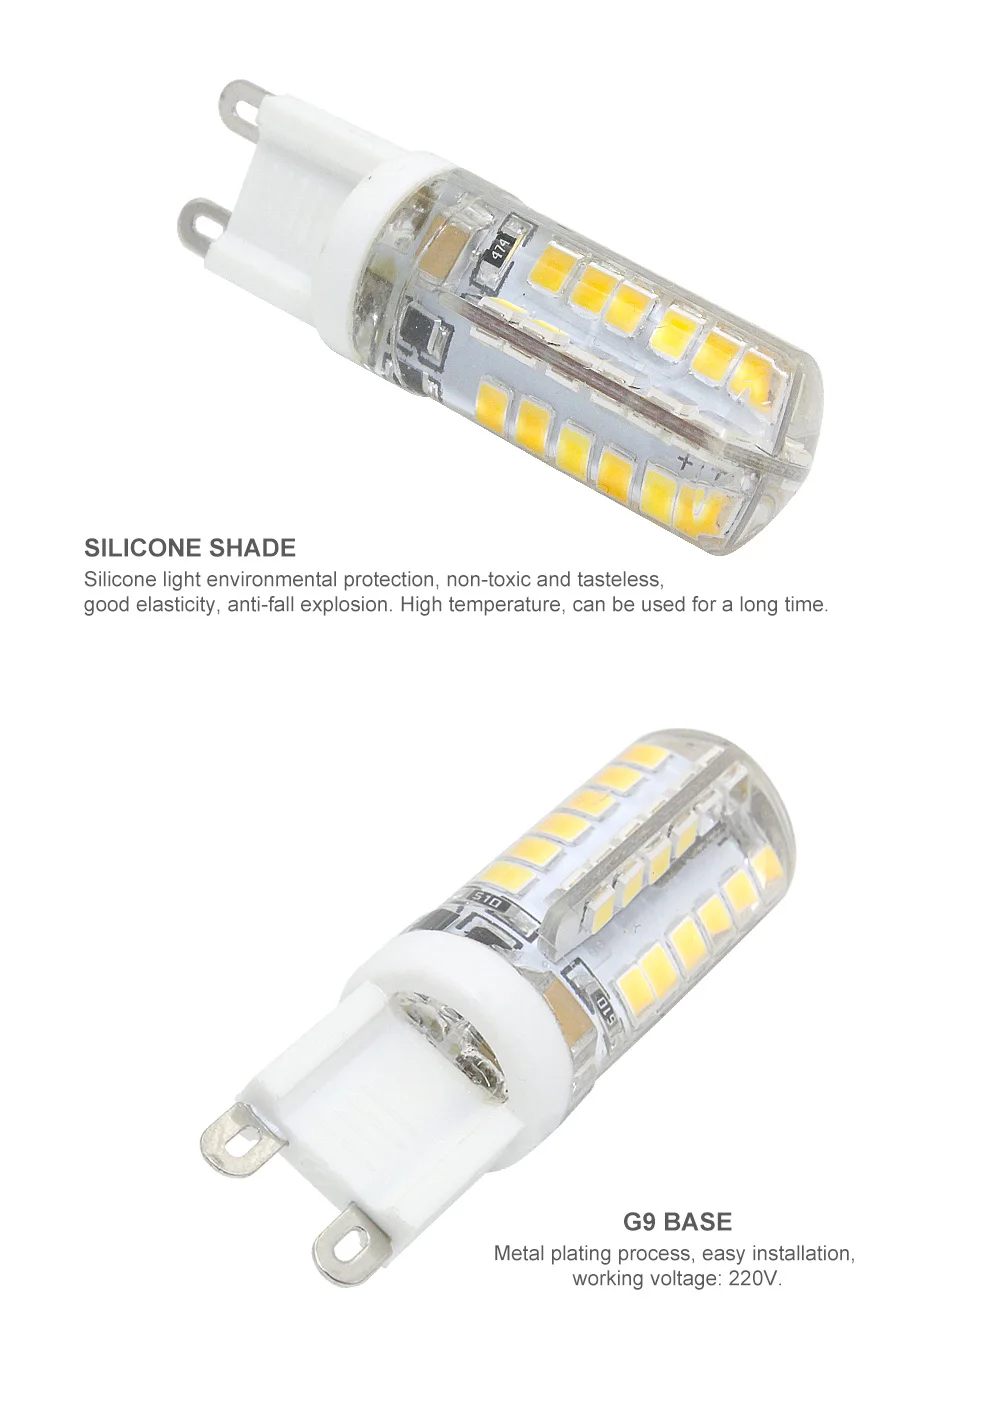 1 шт. Ampoule G9 светодиодный светильник для кукурузы 7 Вт 8 Вт 10 Вт 12 Вт 220 В, прожектор, лампа Bombillas для замены 20 Вт 30 Вт 40 Вт галогенная лампа 360 градусов Lamparas